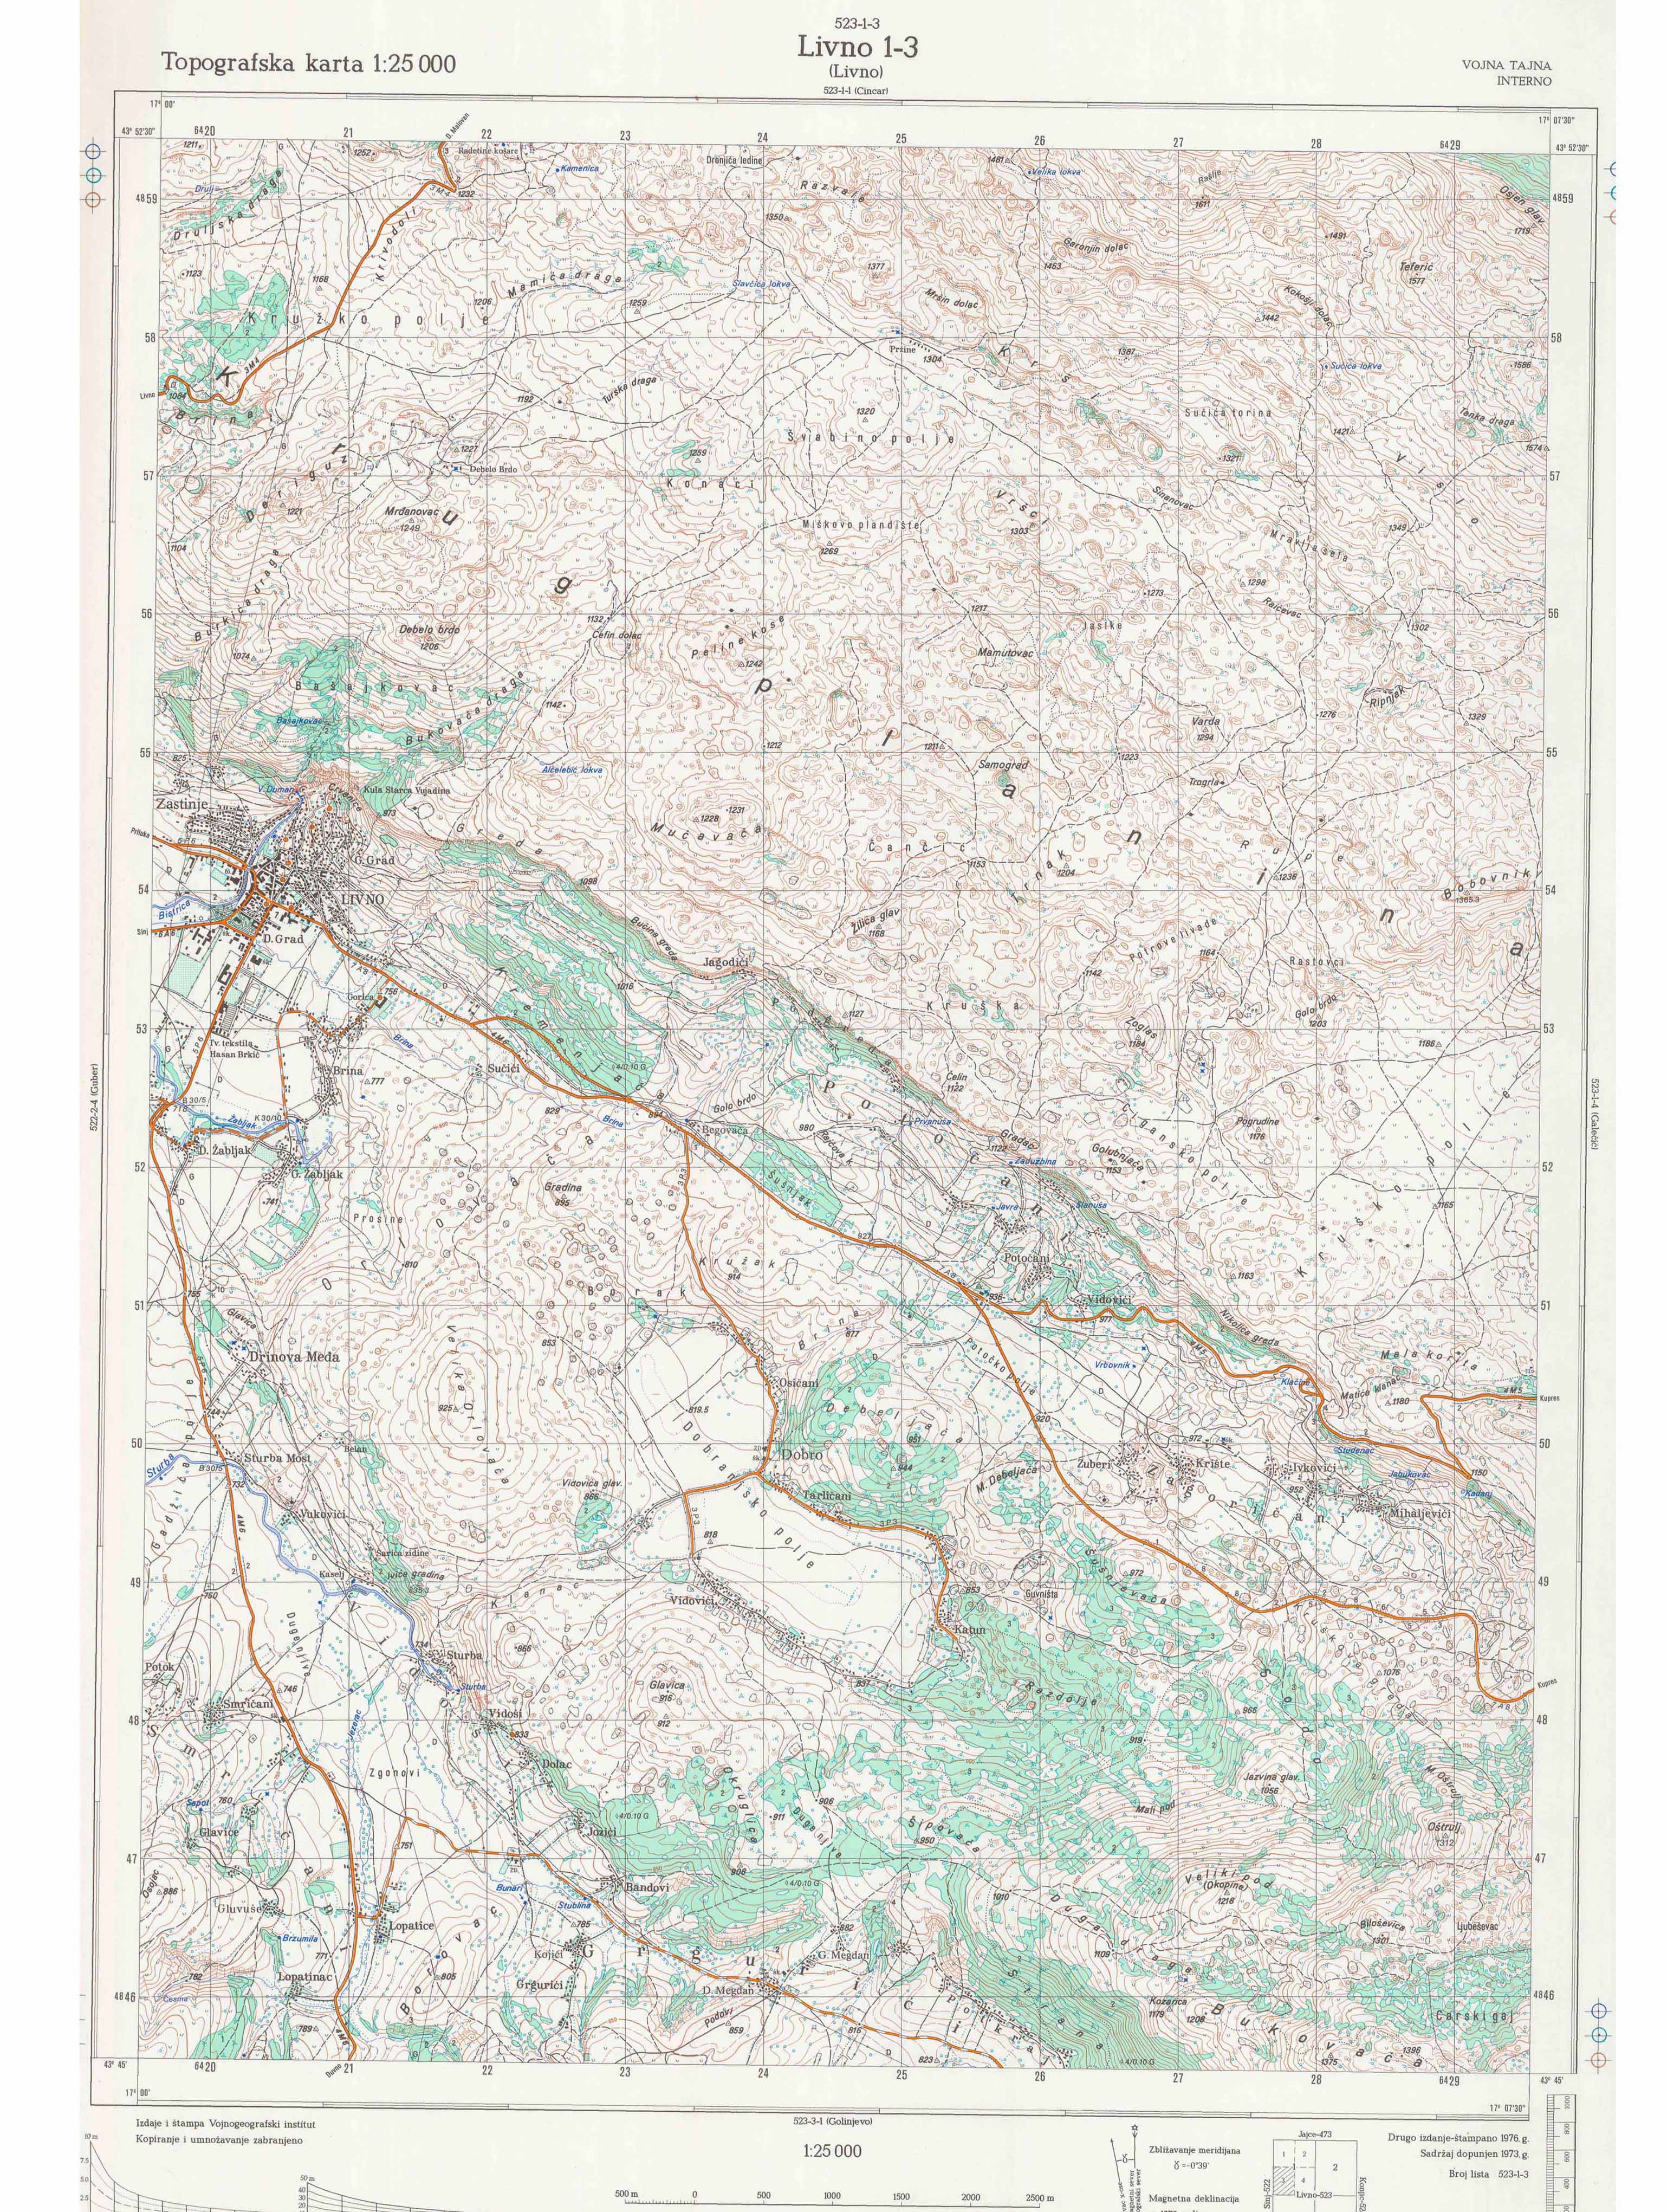  topografska karta BiH 25000 JNA  Livno